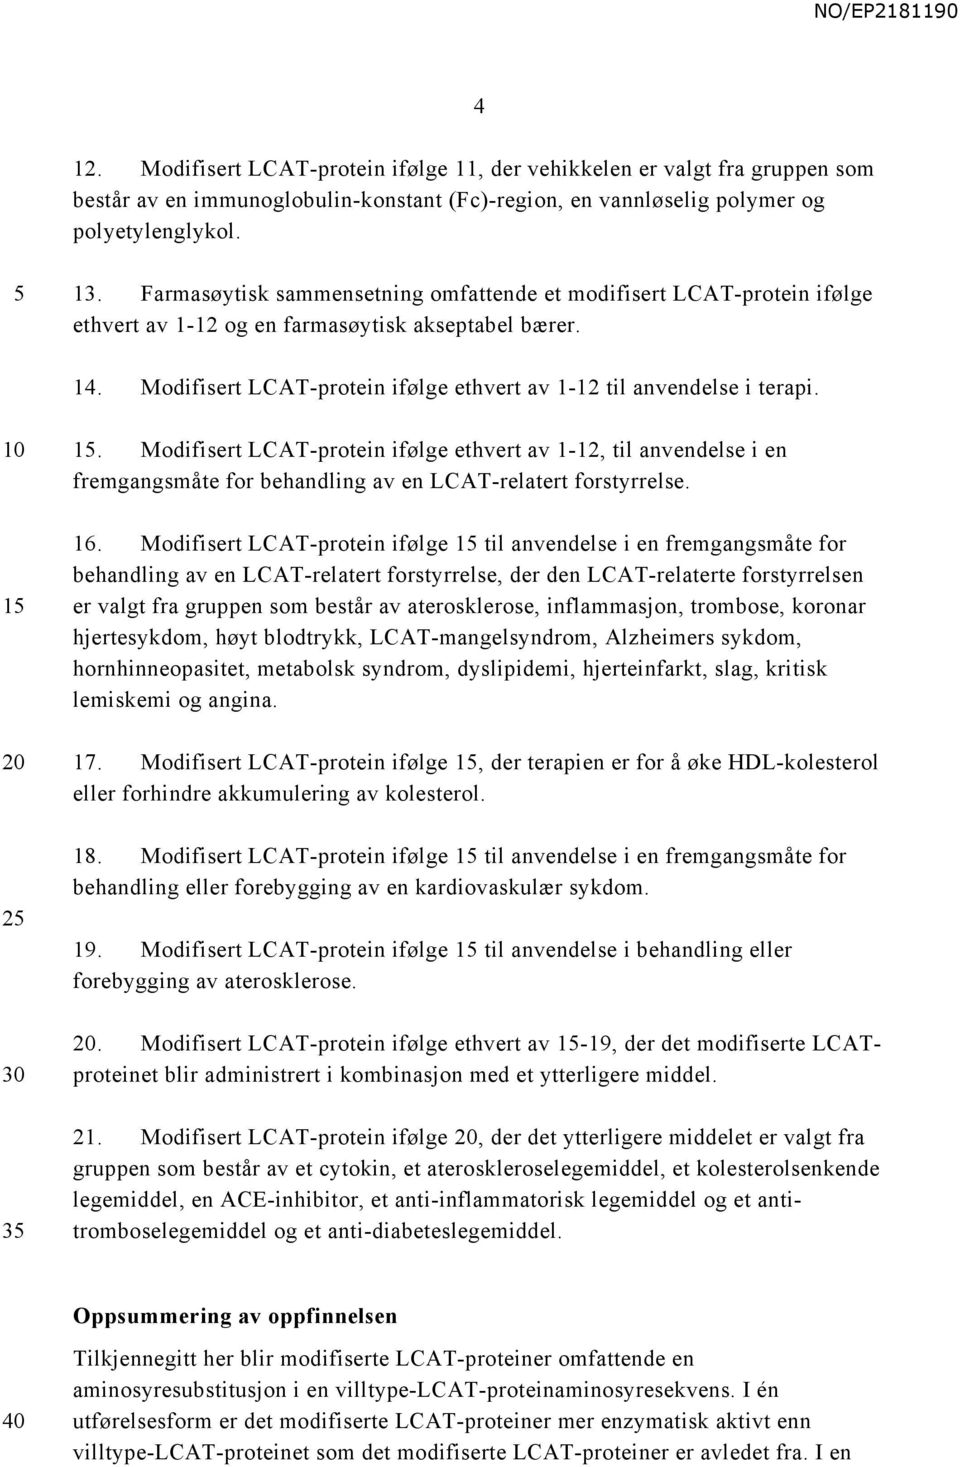 1 2 3 1. Modifisert LCAT-protein ifølge ethvert av 1-12, til anvendelse i en fremgangsmåte for behandling av en LCAT-relatert forstyrrelse. 16.